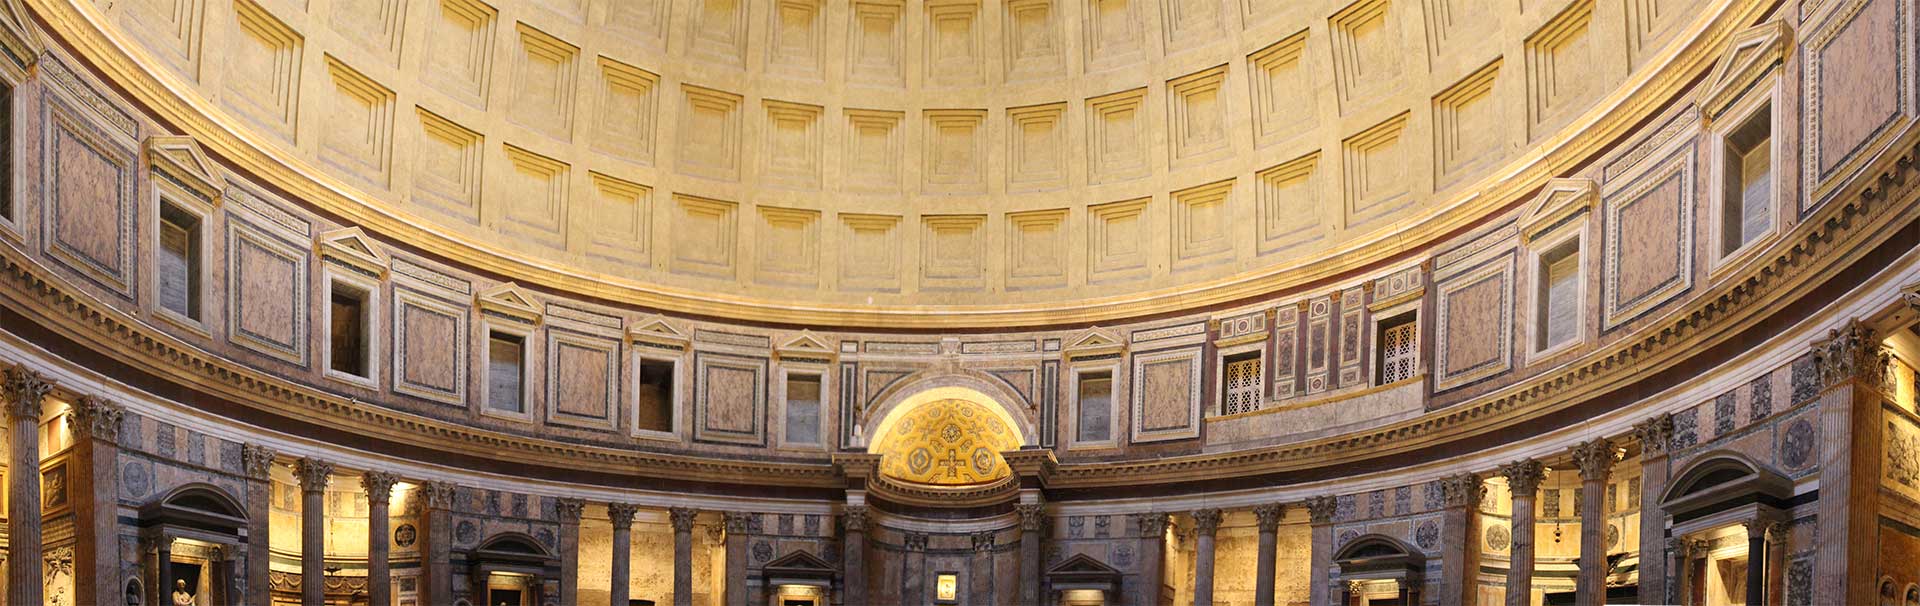 Pantheon de Roma - de templo pagão a igreja católica